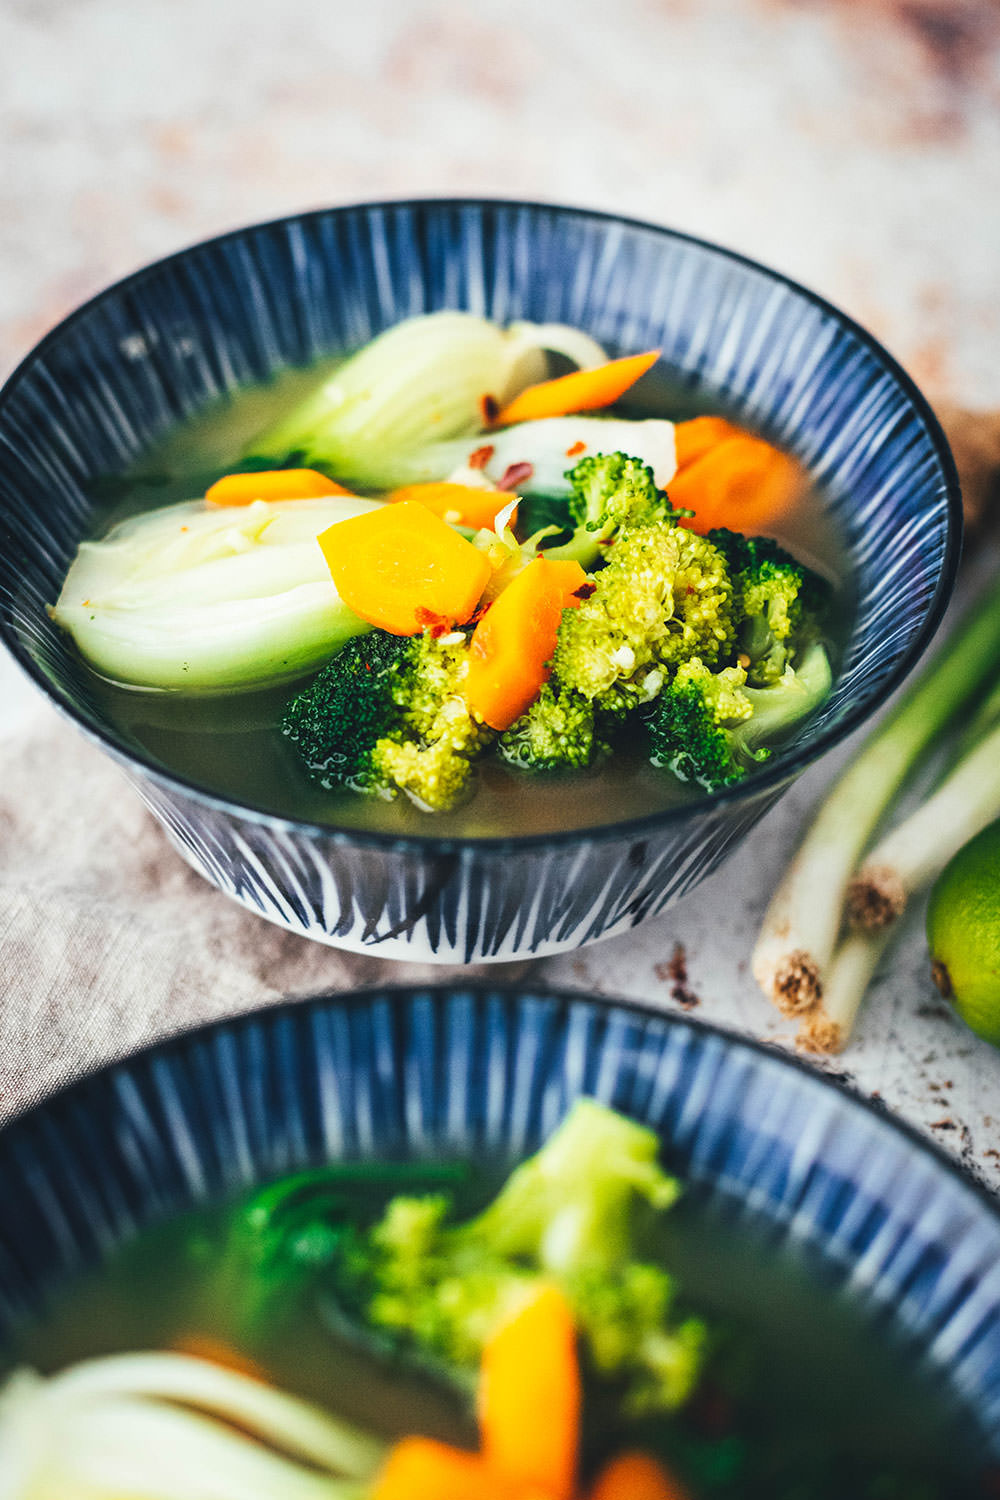 Rezept für eine würzige Asia-Suppe. Vegane Gemüsesuppe auf Basis einer einfachen Gemüsebrühe, die mit asiatischen Aromen verfeinert wird. Super einfach mit Möhren, Pak Choi und Brokkoli und so lecker! | moeyskitchen.com